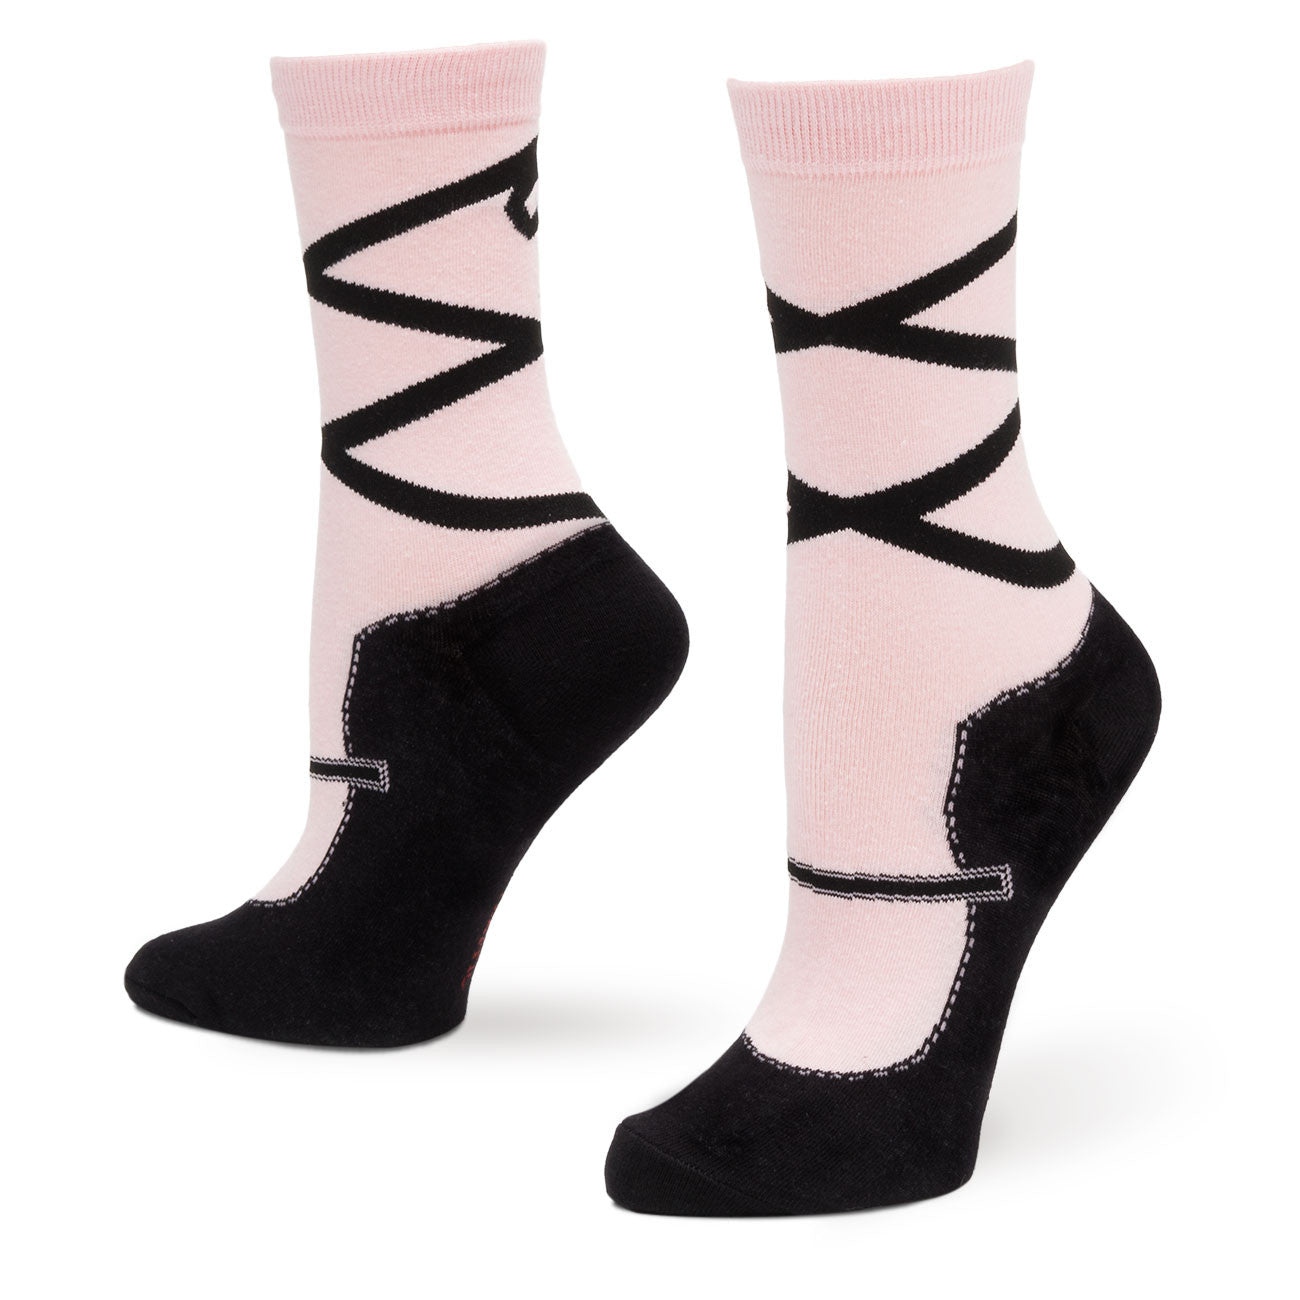 socks that look like ballet slippers